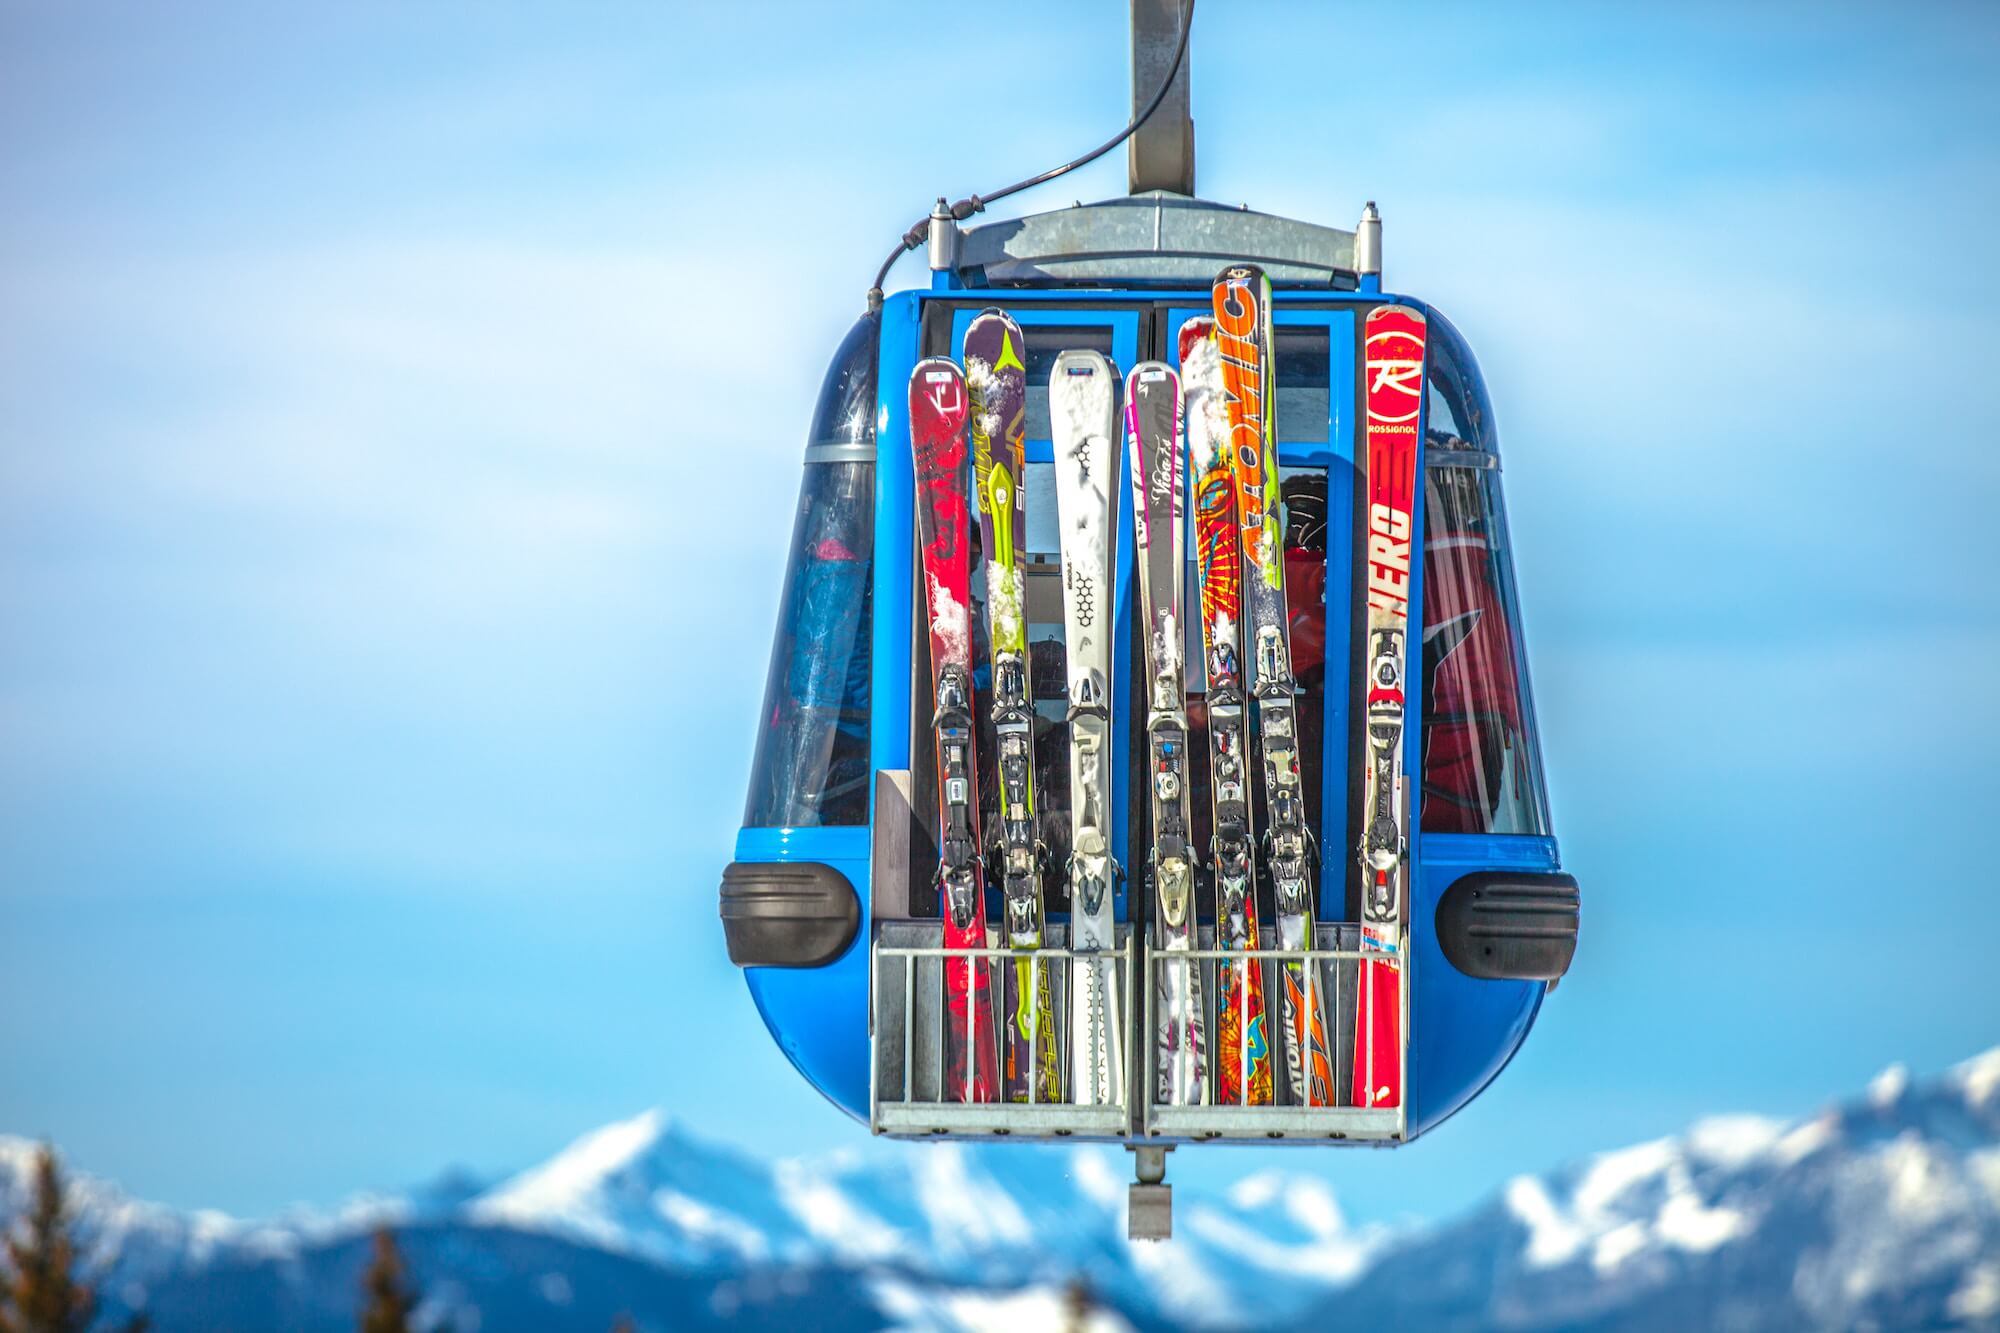 slipp knäskada när du åker skidor